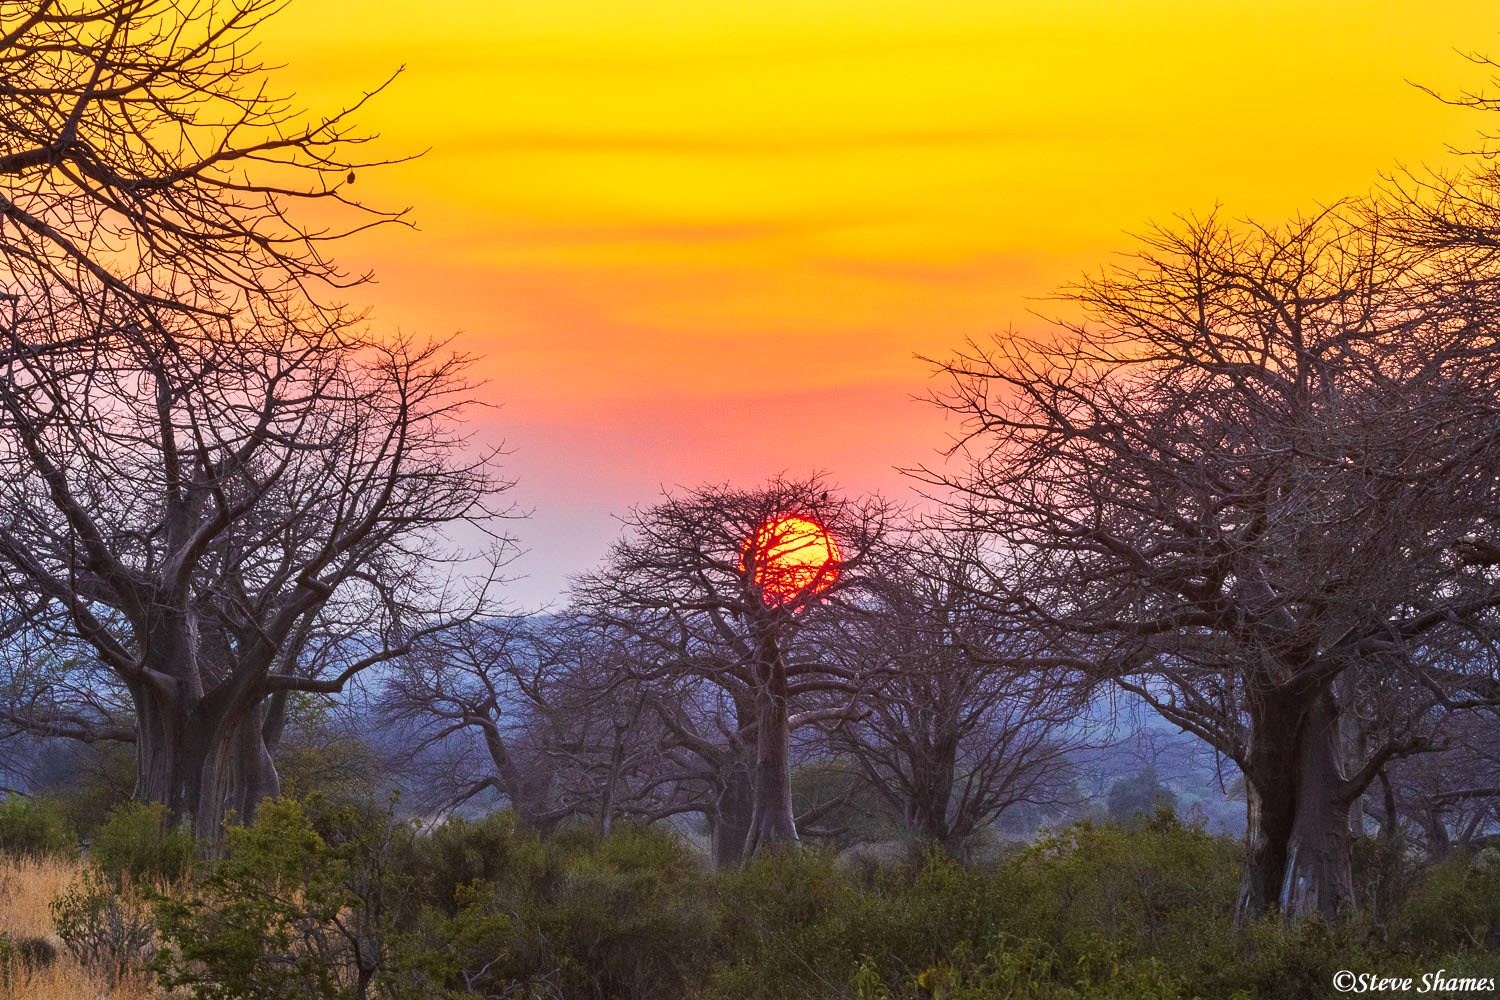 The setting sun looks like a big orange ball stuck in a tree.